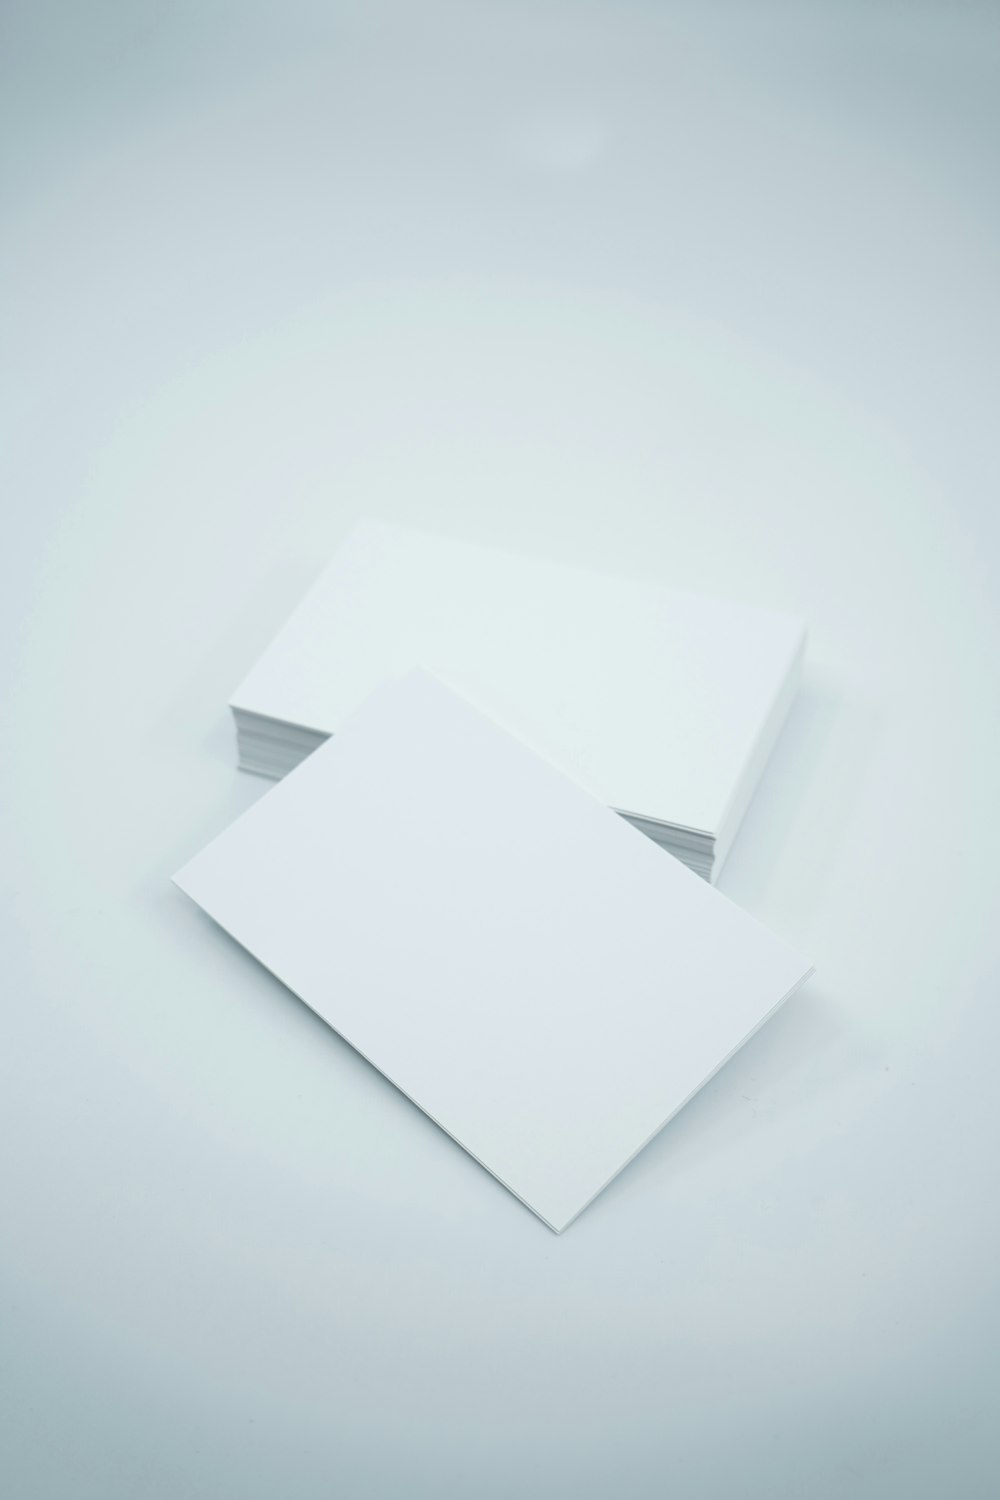 zwei leere Papierbögen auf weißem Grund